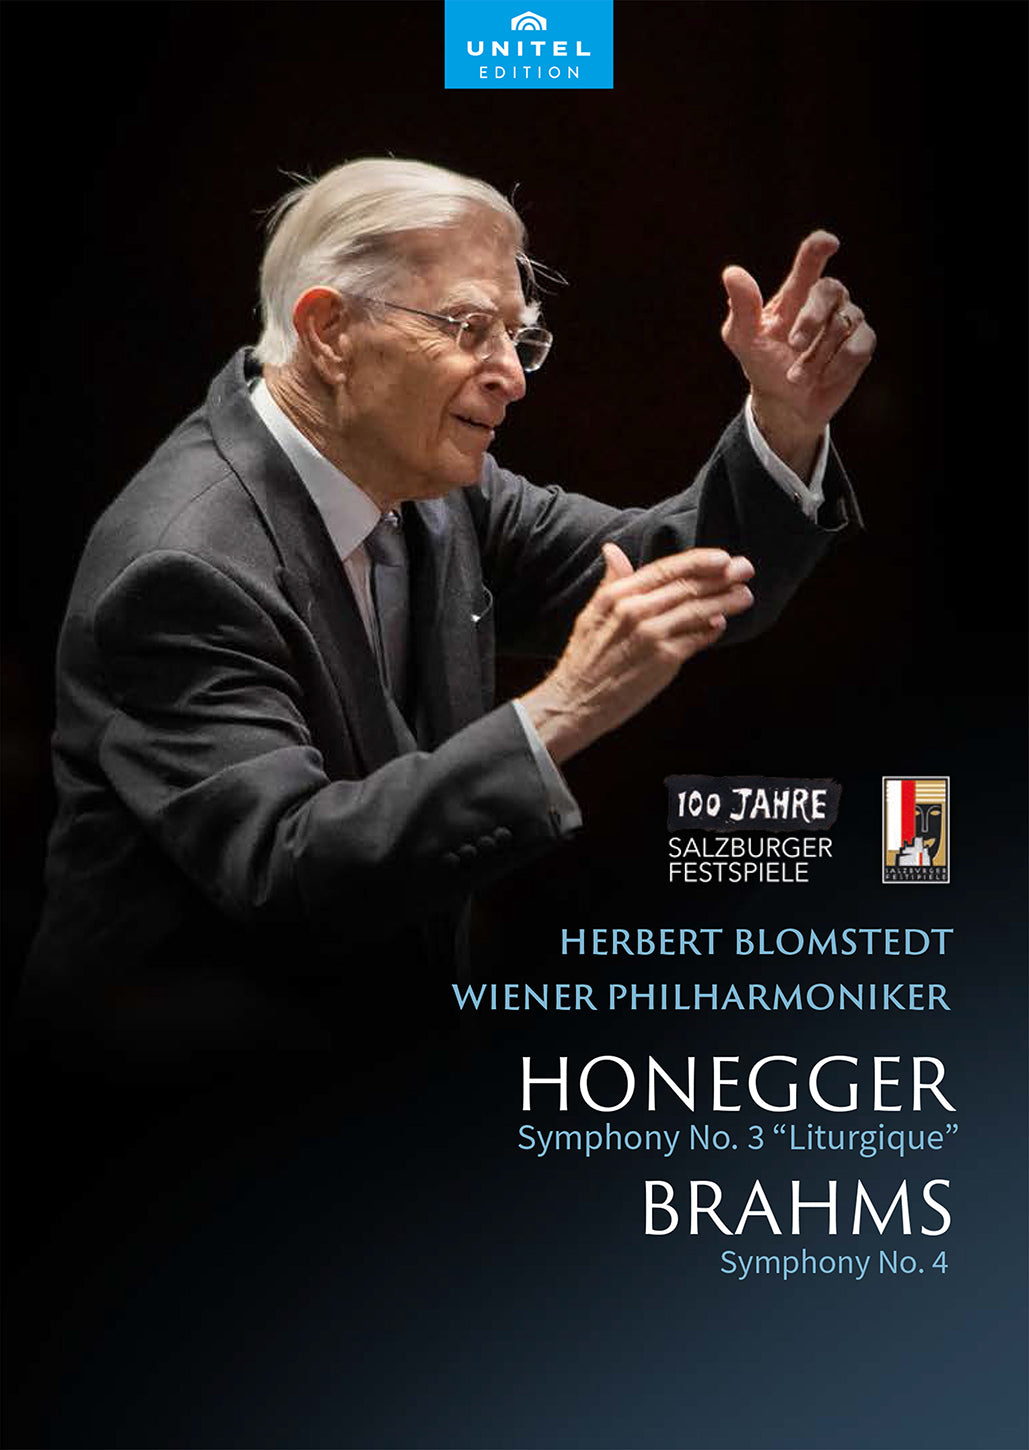 Honegger & Brahms: Wiener Philharmoniker & Herbert Blomstedt at Salzburg